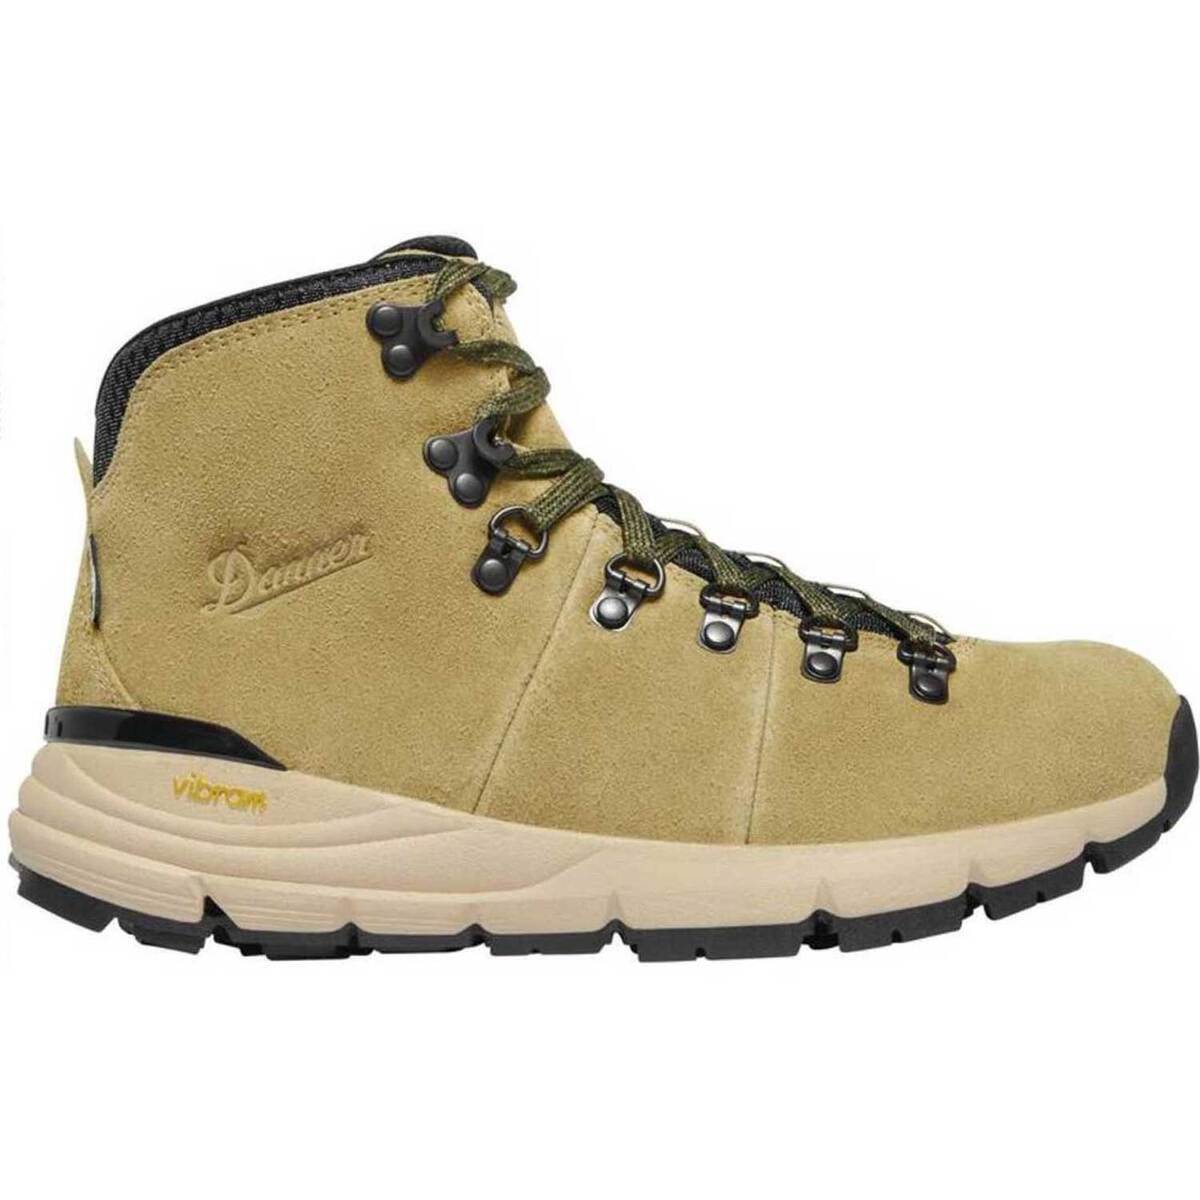 Danner Women's Mountain 600 Waterproof Mid Hiking Boots | Sportsman's ...